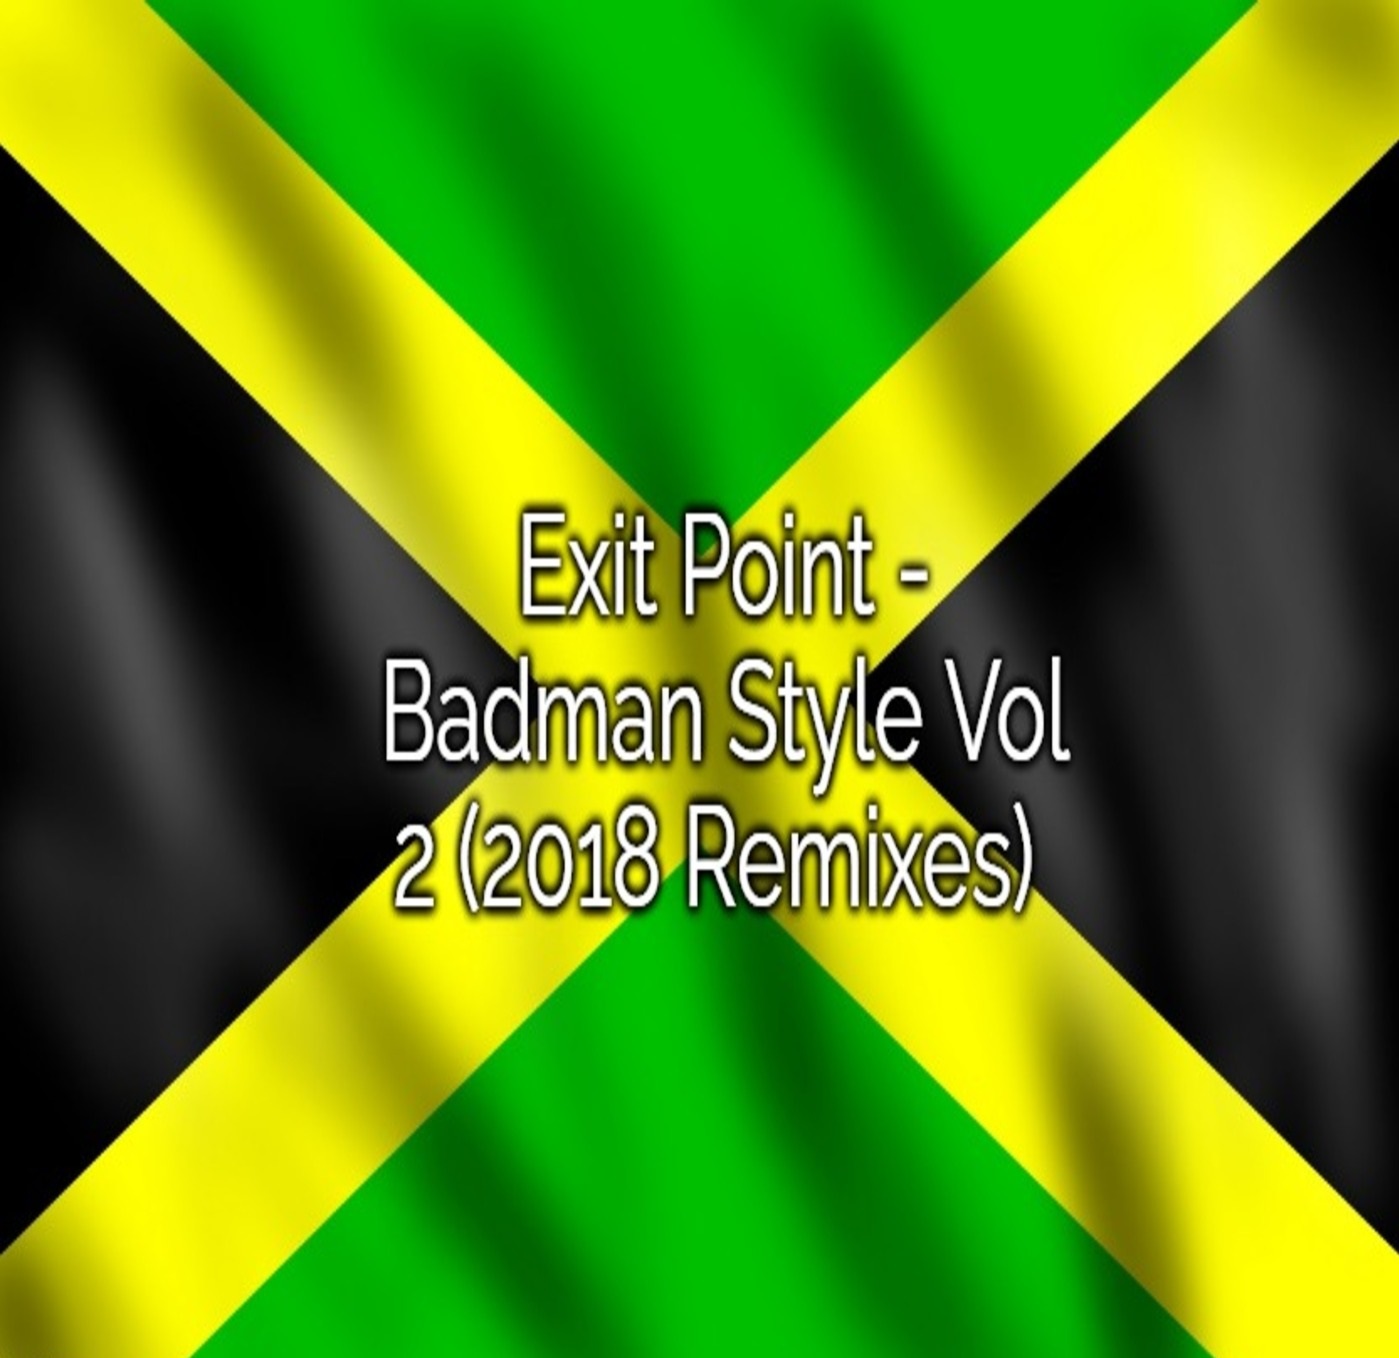 View Album : Exit Point - Badman Style Vol 2 (2018 Remixes)